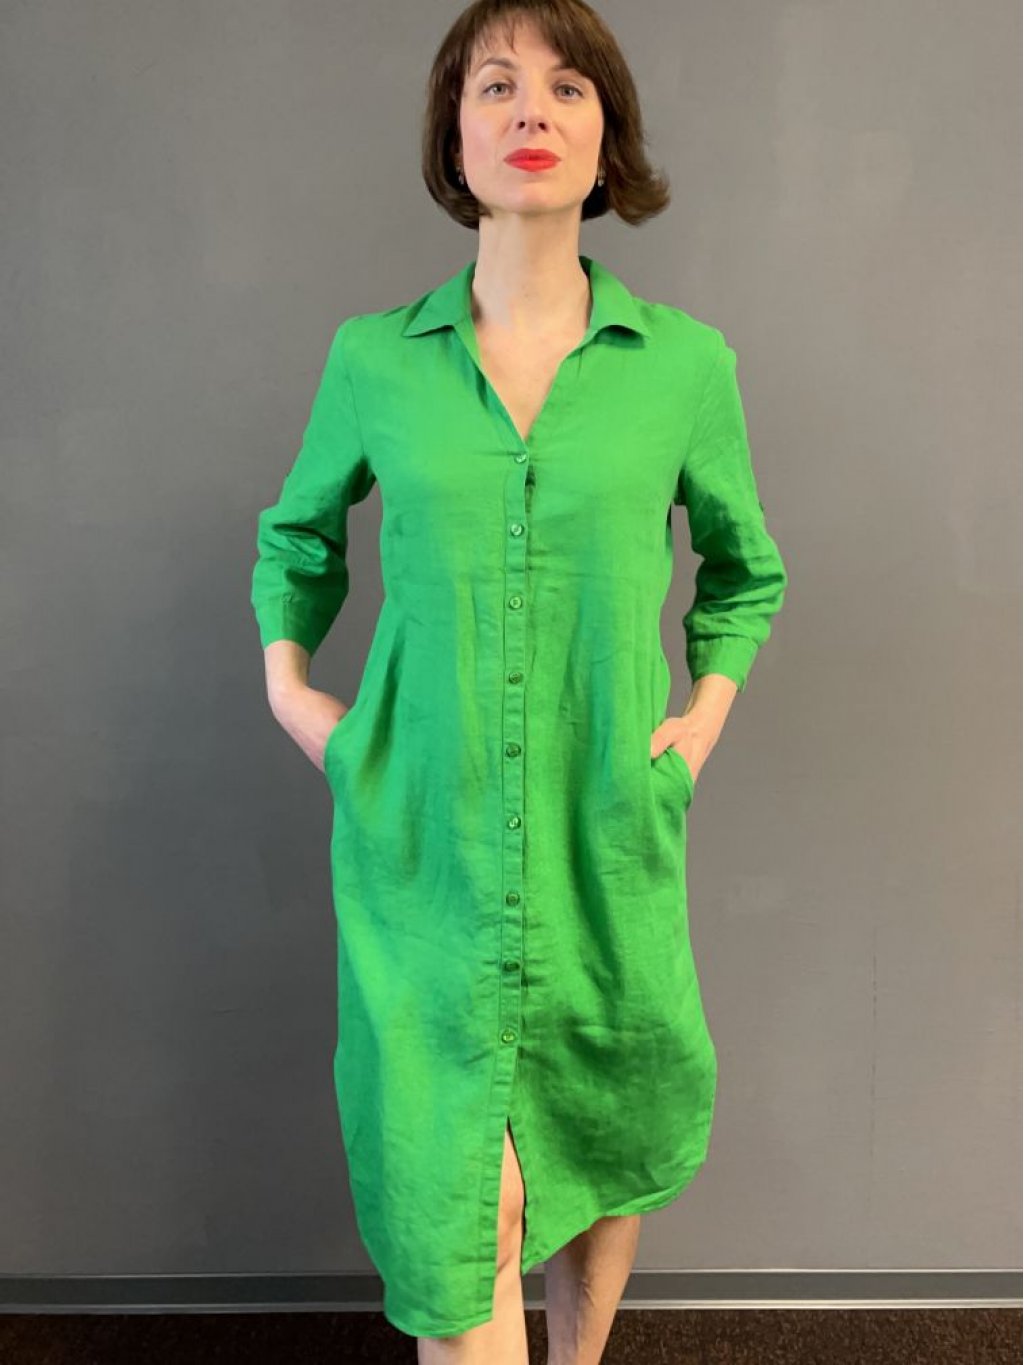 Šaty Kyra Alondra zelené košilové lněné